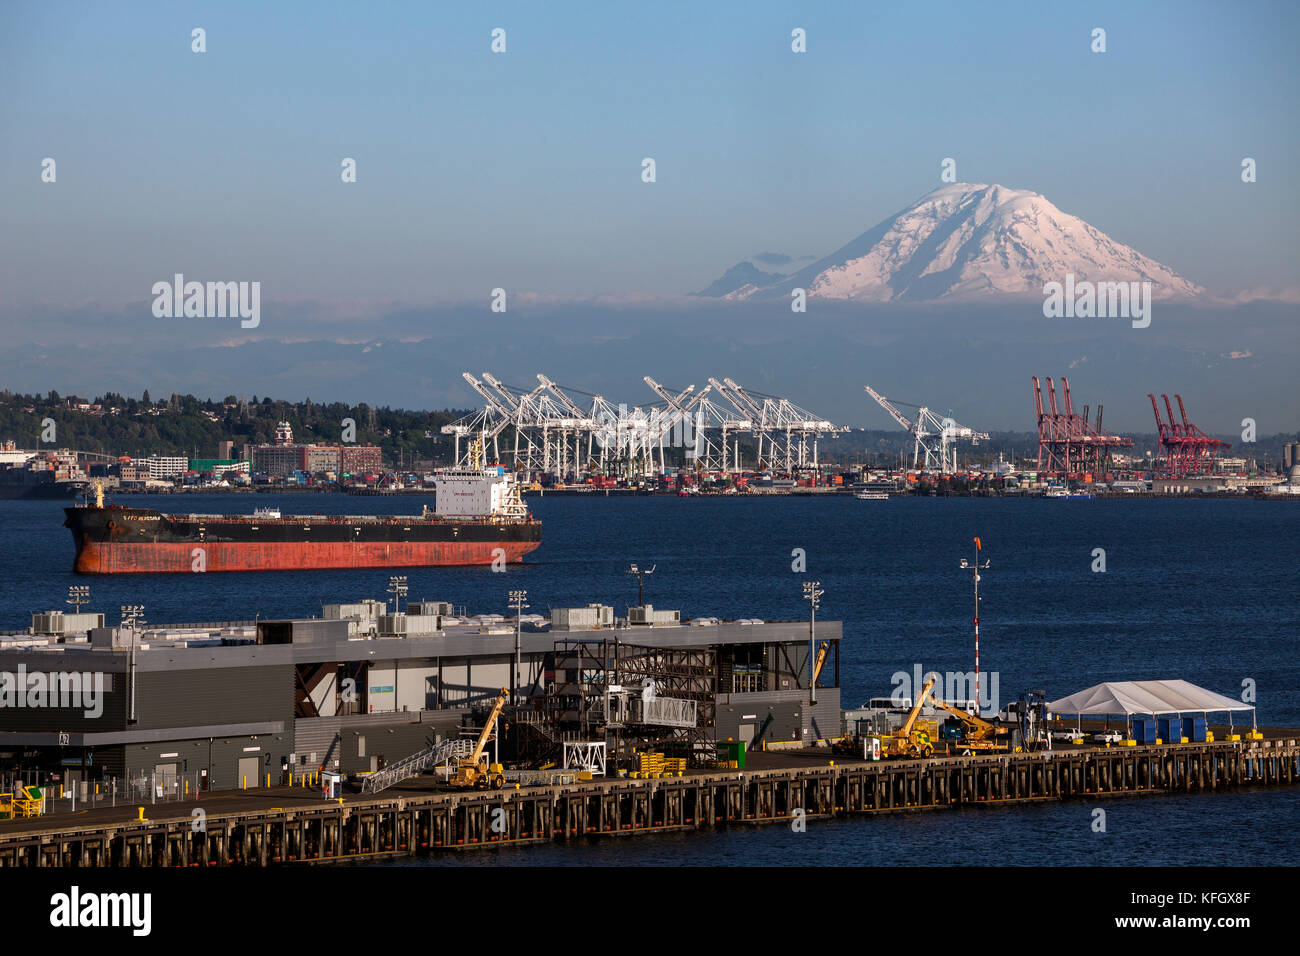 WA14074-00...WASHINGTON -Elliott Bay de Seattle et la zone de navigation industrielle avec Mount Rainier au loin Banque D'Images